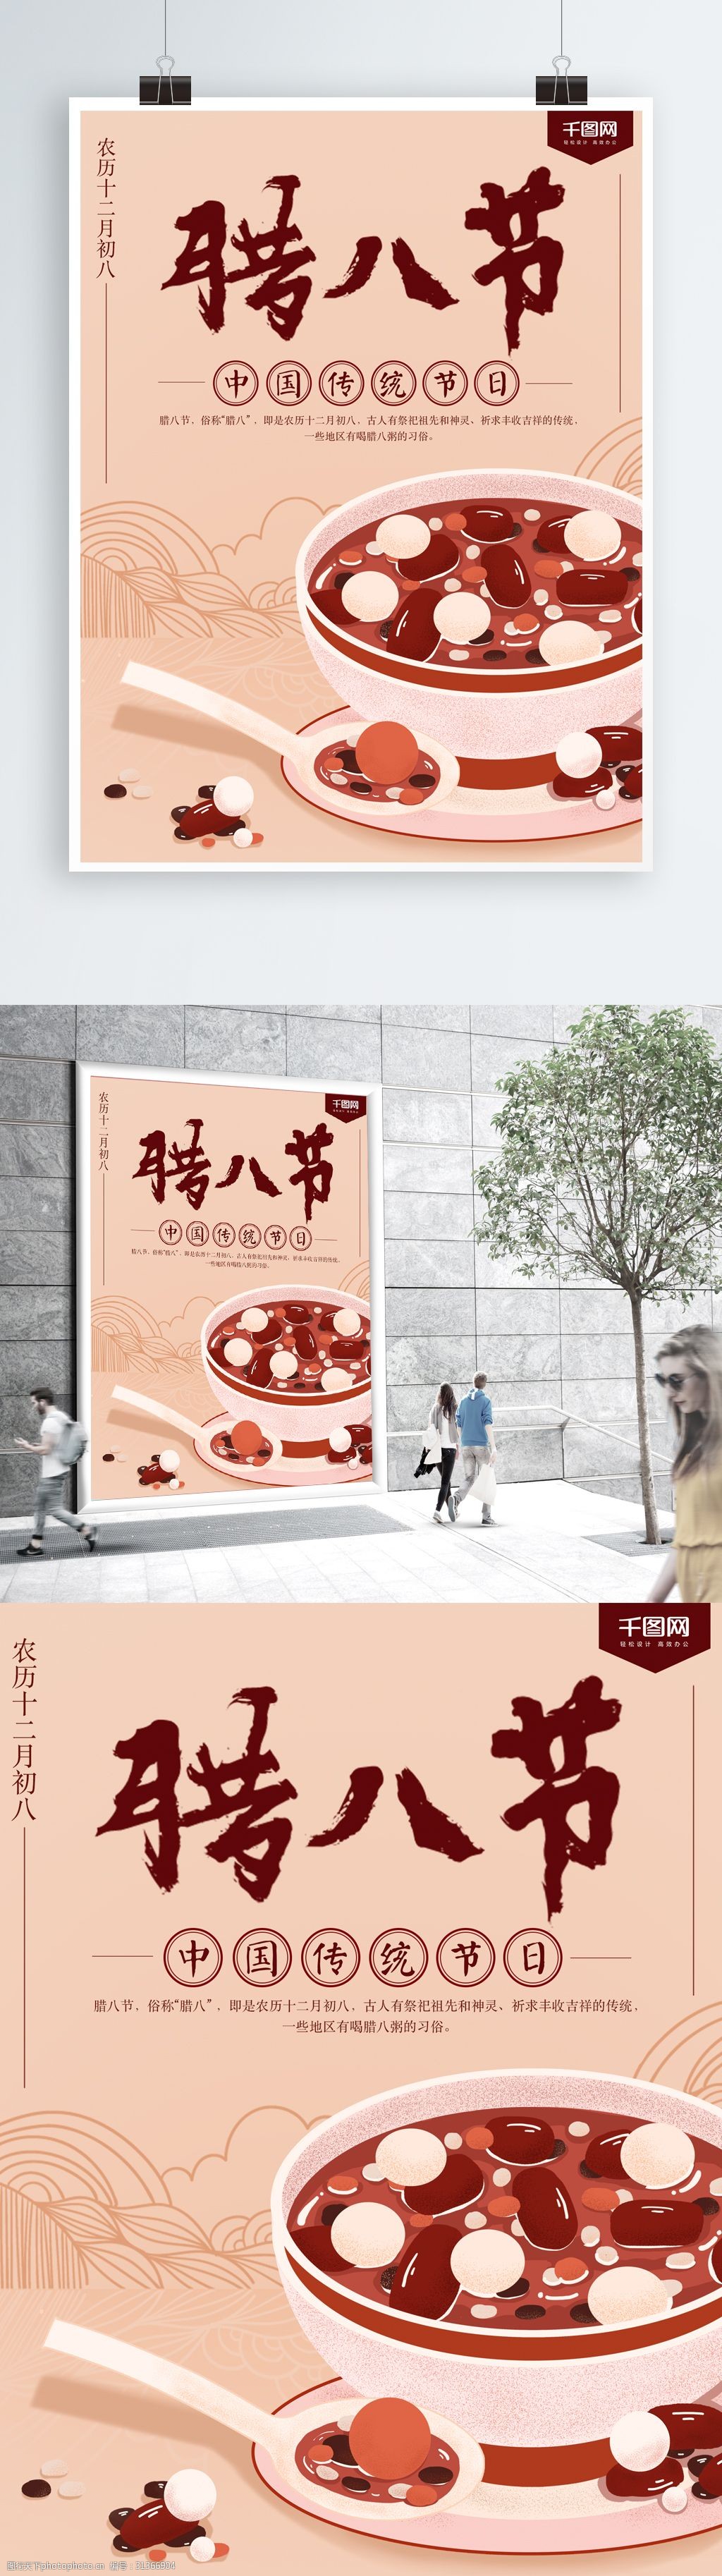 关键词:浅色中国传统节日腊八节海报 红豆 腊八粥 中国风 手绘 创意